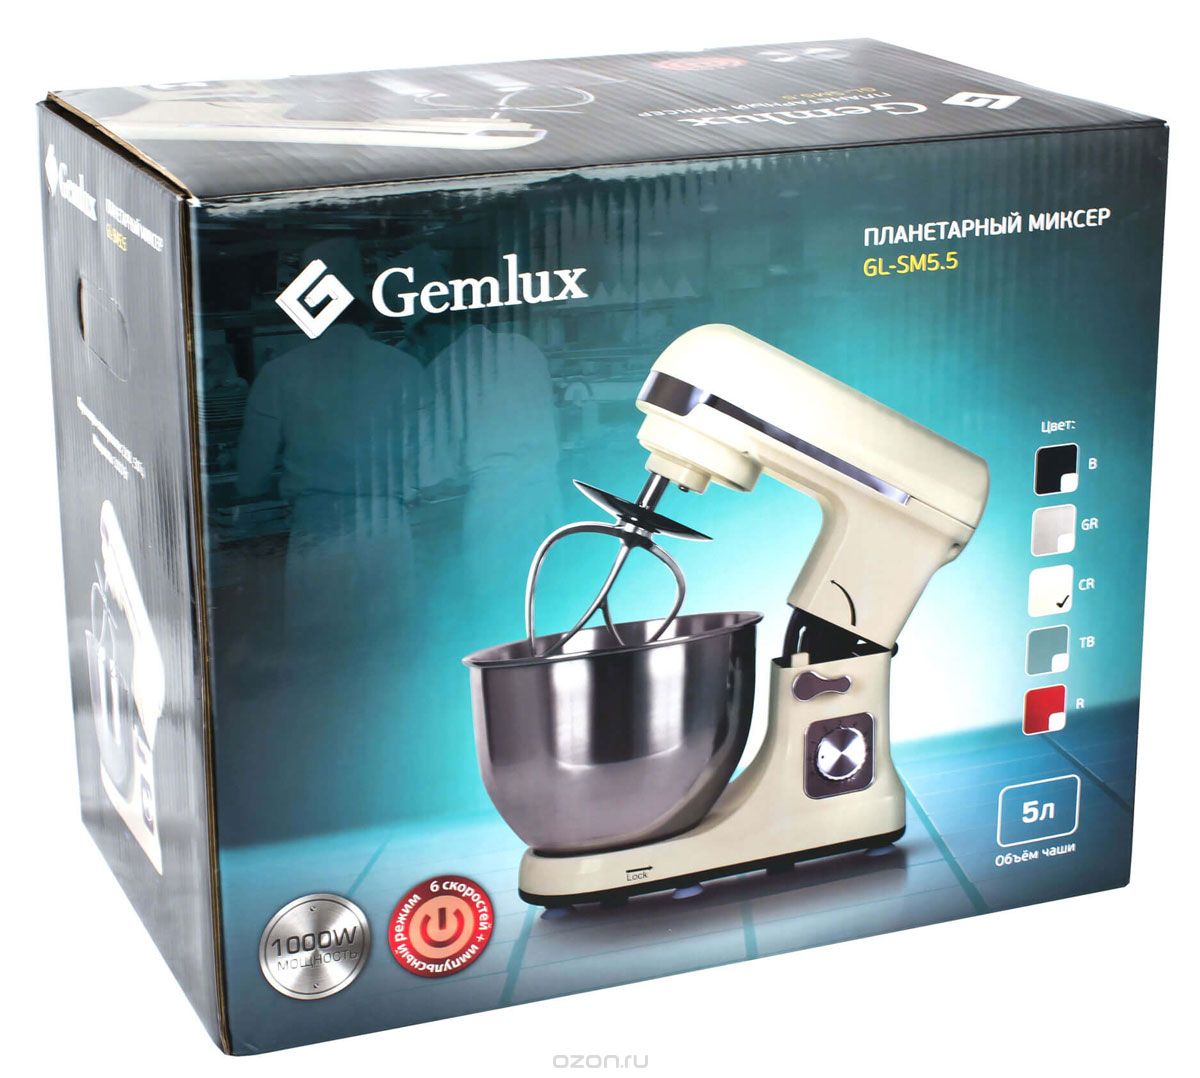  Gemlux GL-SM5.5CR, Cream